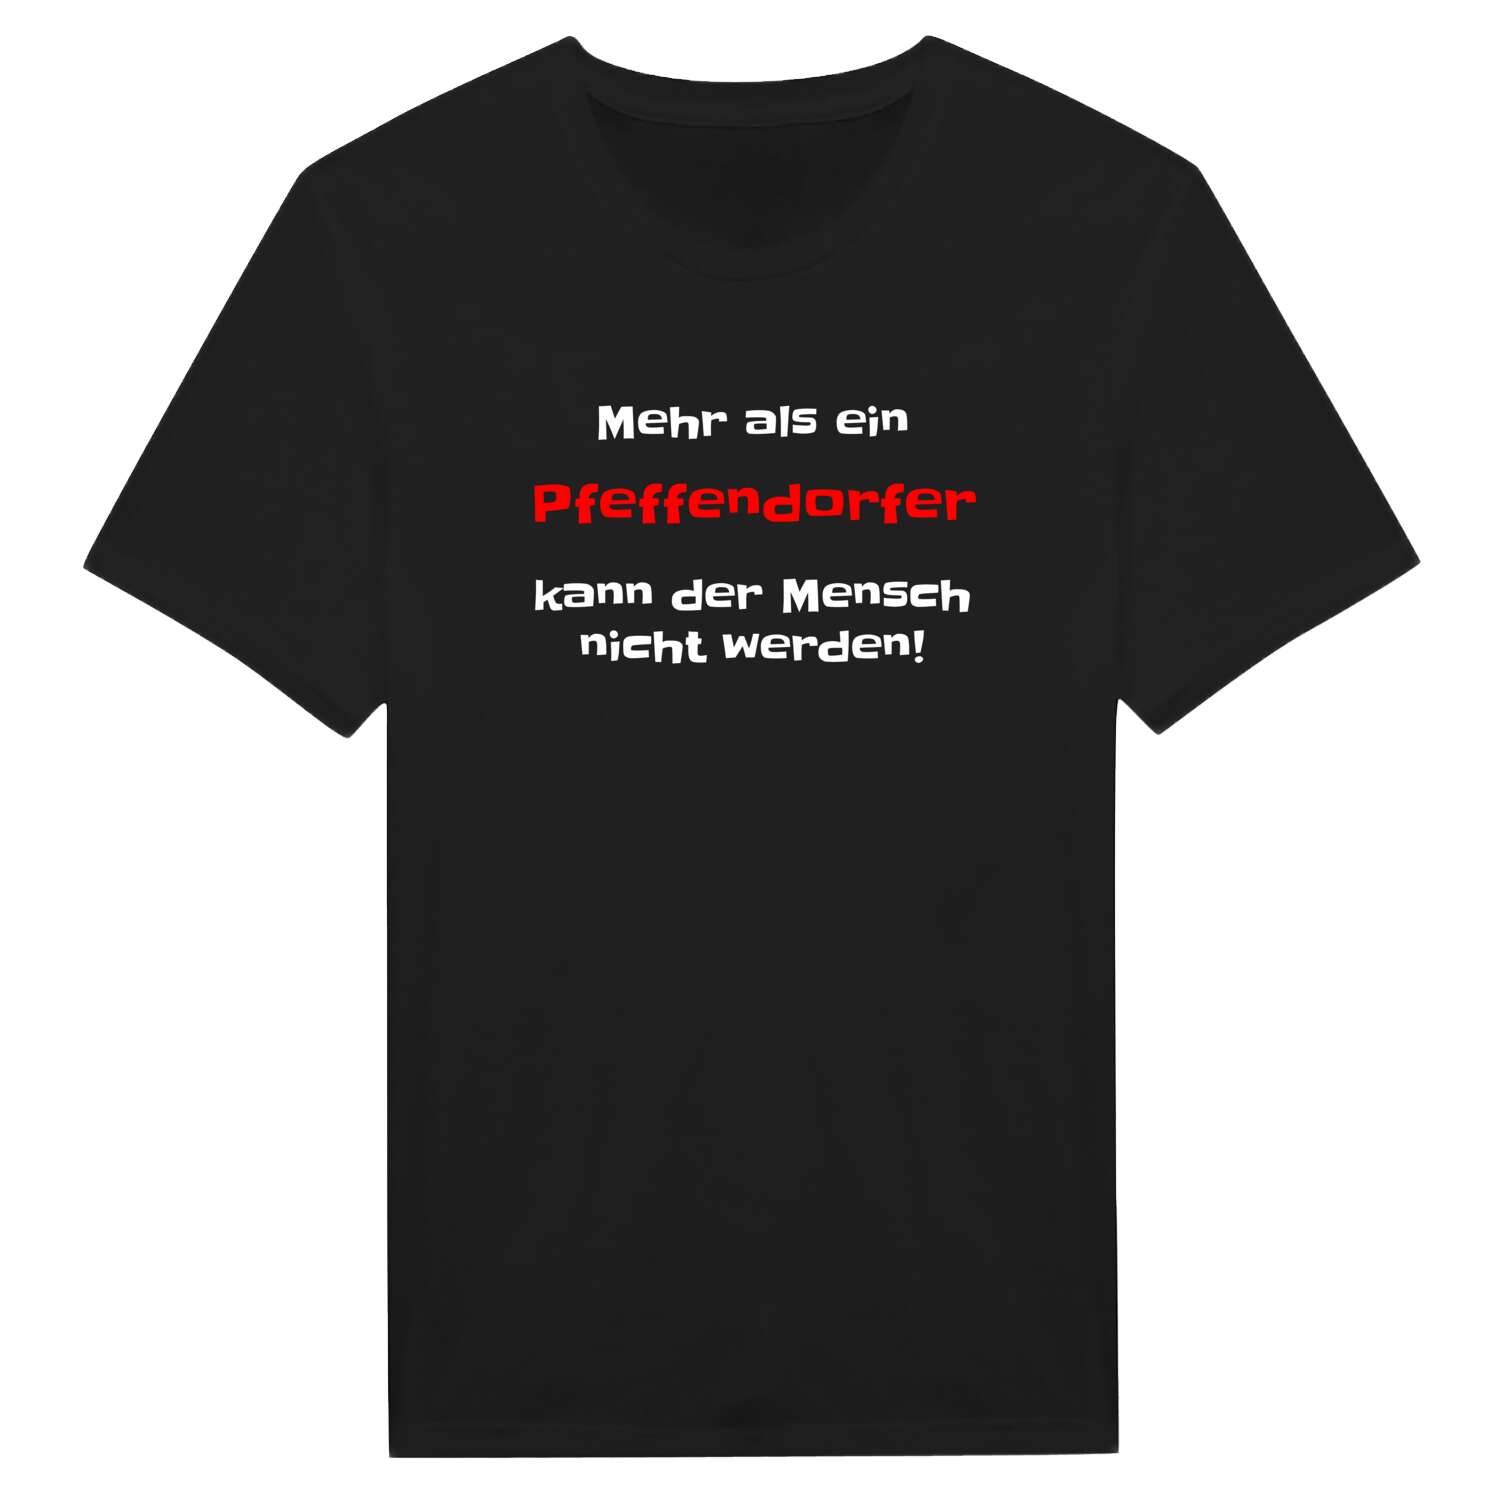 Pfeffendorf T-Shirt »Mehr als ein«